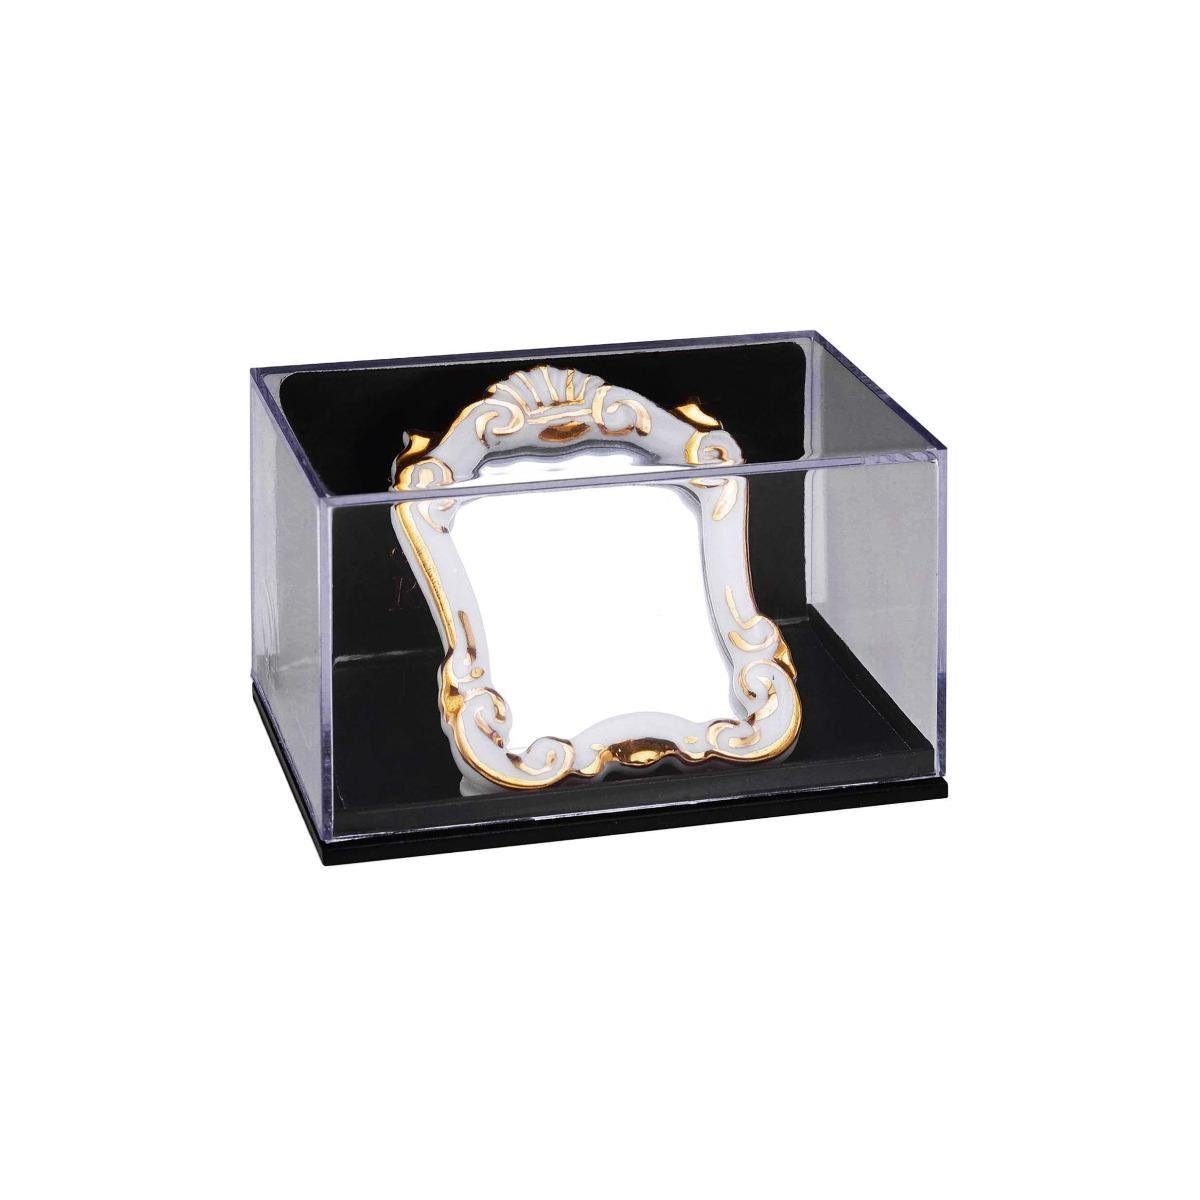 Reutter Porzellan Dekofigur Miniatur - Barockspiegel, weiß, 001.624/6